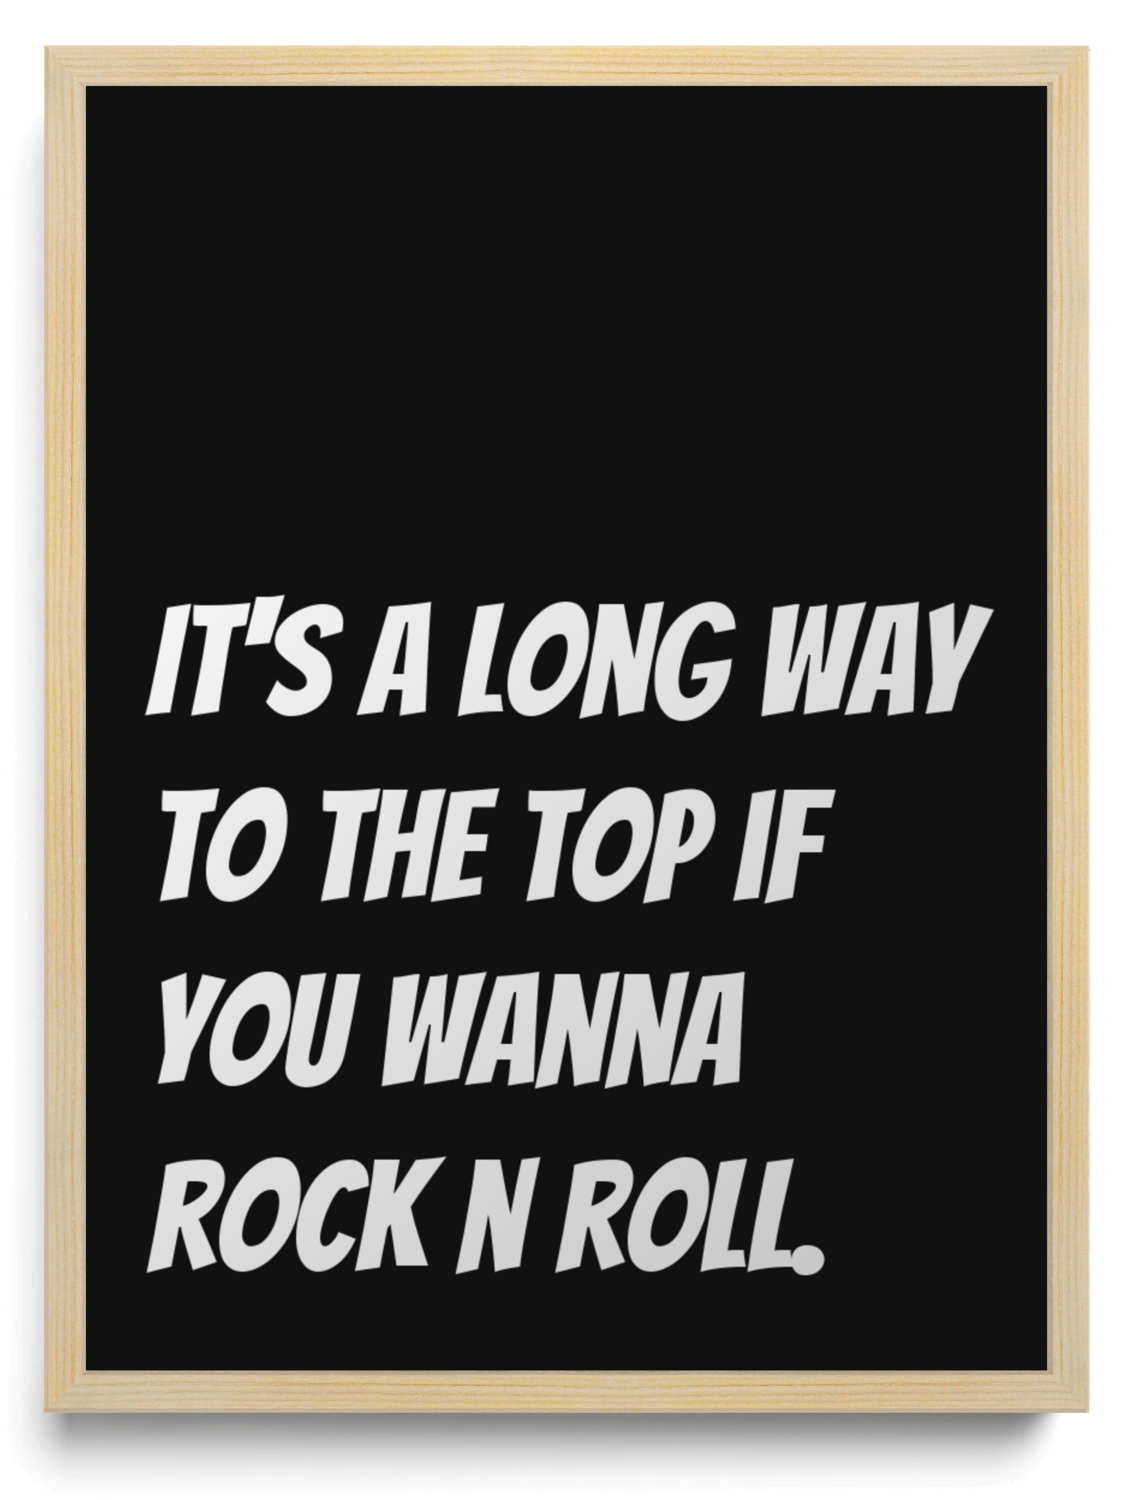 It's a long way to the top if you wanna rock n roll.